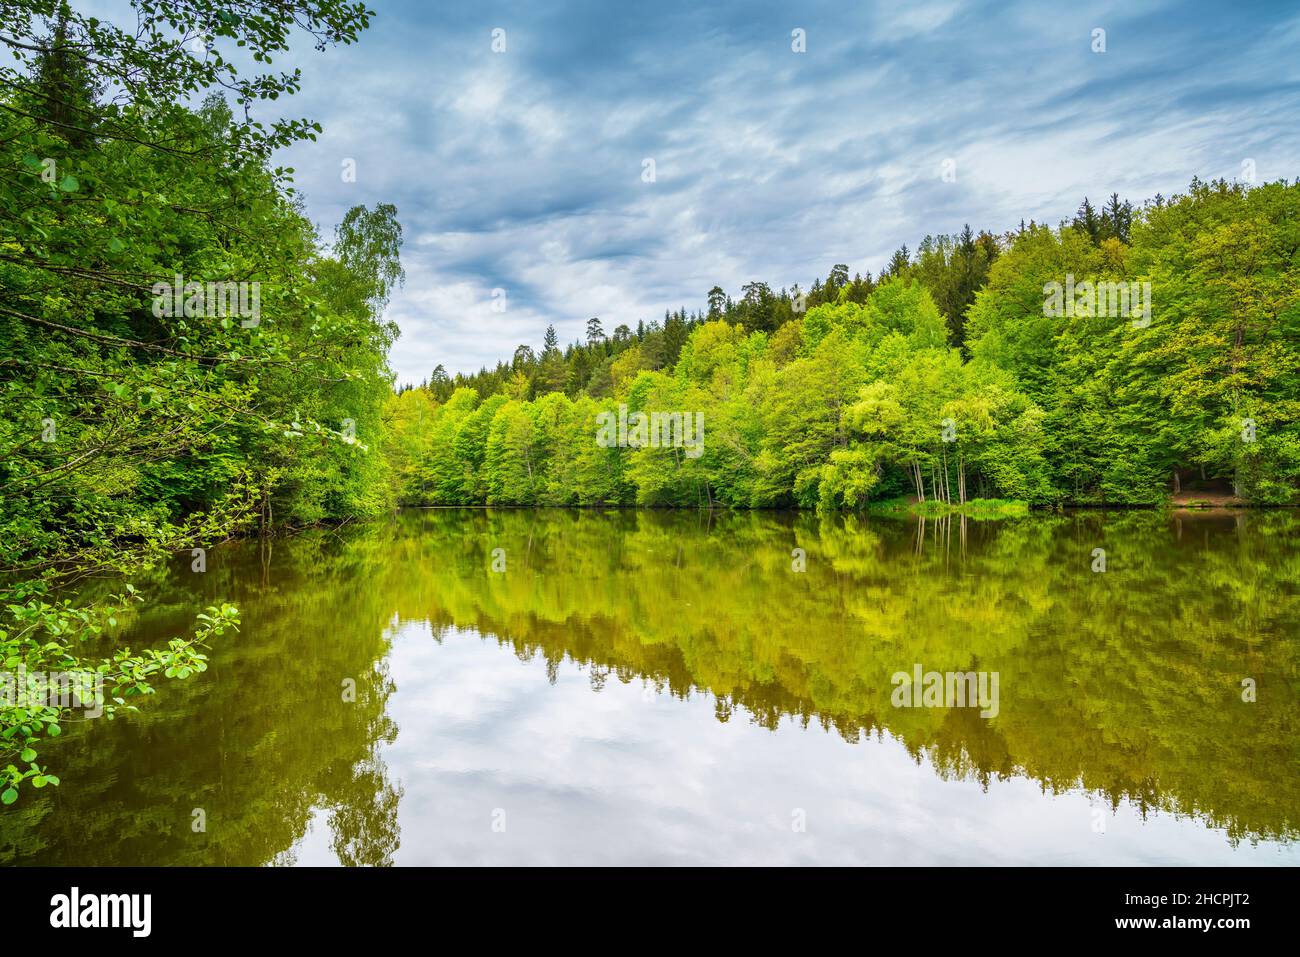 Alemania, el agua tranquila del lago de arenbachstausee rodeado de bosque verde y paisaje natural cerca de adelberg y goeppingen que se refleja en el sur de agua vidriosa Foto de stock